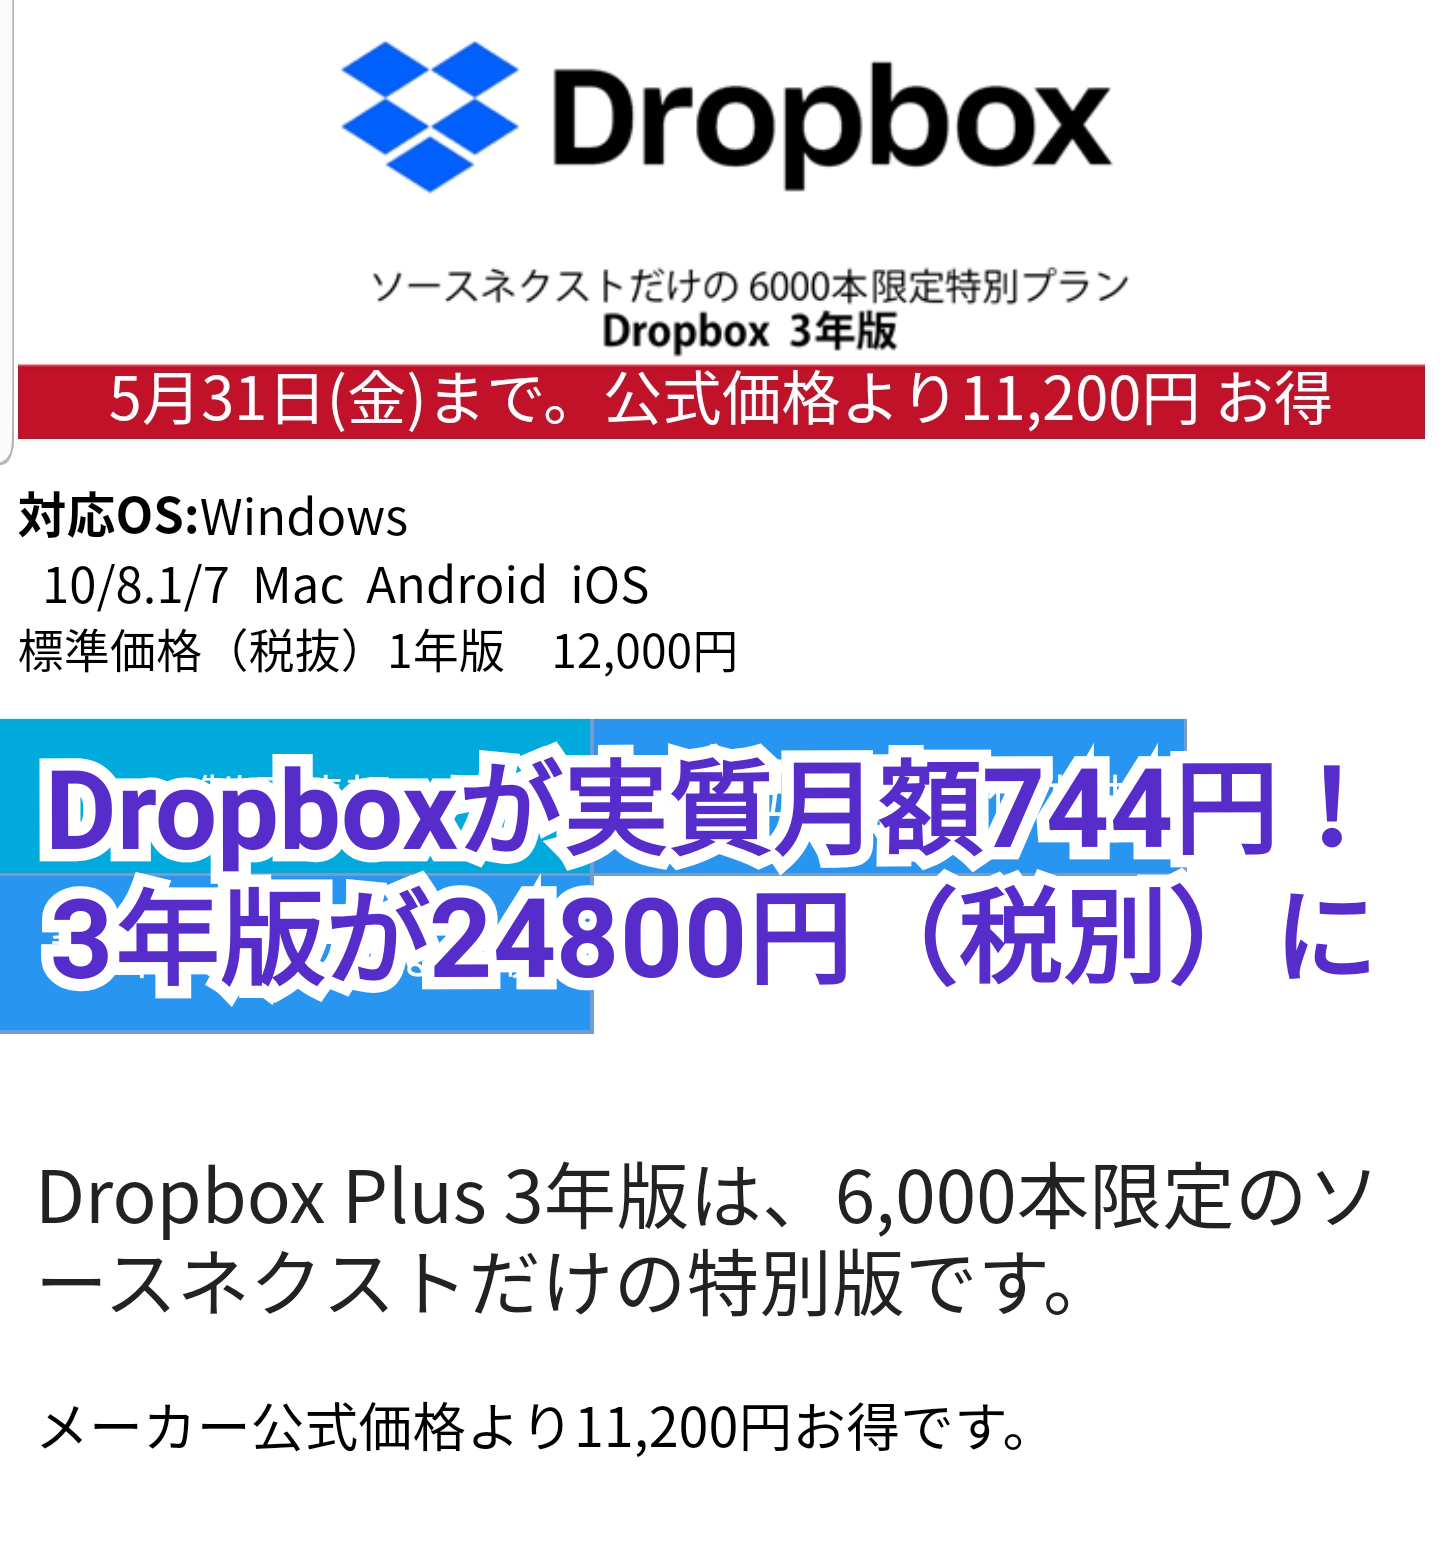 セール情報 Dropbox Plusが実質月額744円 税込 に ソースネクストで3年版が限定販売 5月31日まで ひとぅブログ